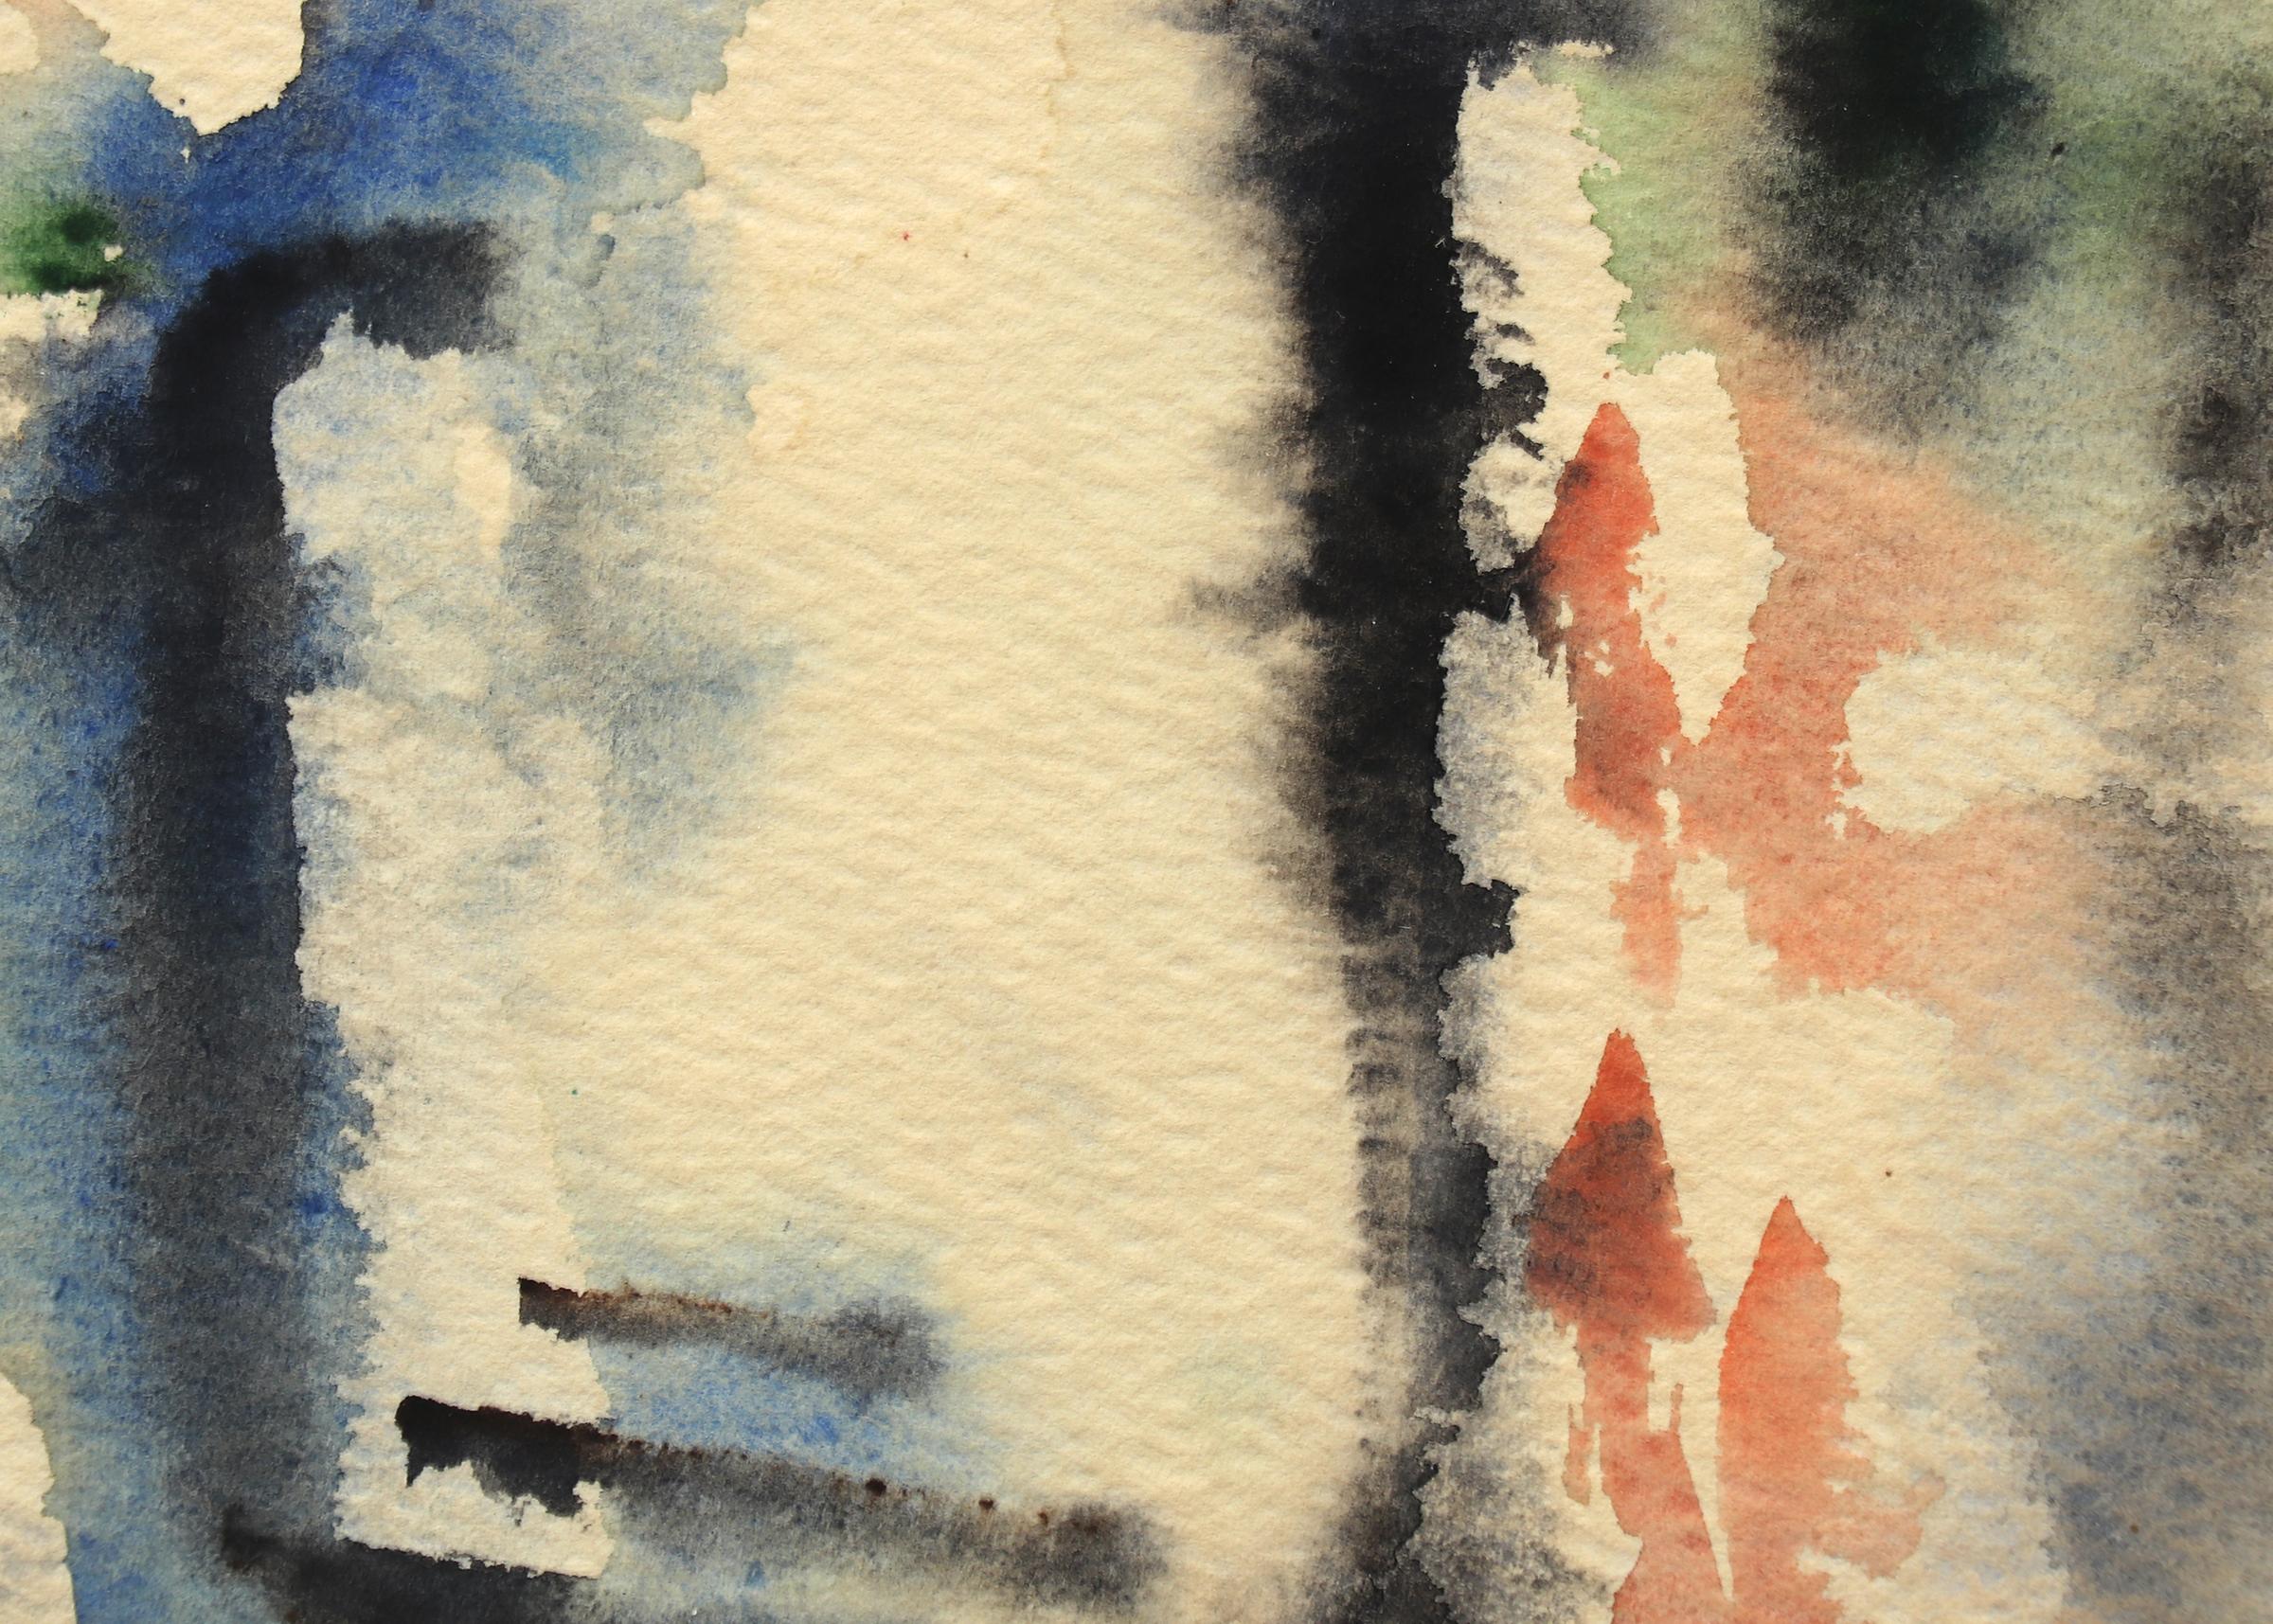 Abstraktes expressionistisches Aquarell in Blau, Schwarz, Orange und Grün, signiert von Charles Ragland Bunnell (1897-1968). Präsentiert in einem maßgeschneiderten Rahmen mit allen archivtauglichen Materialien und UV-Schutzglas, Außenmaße messen 17